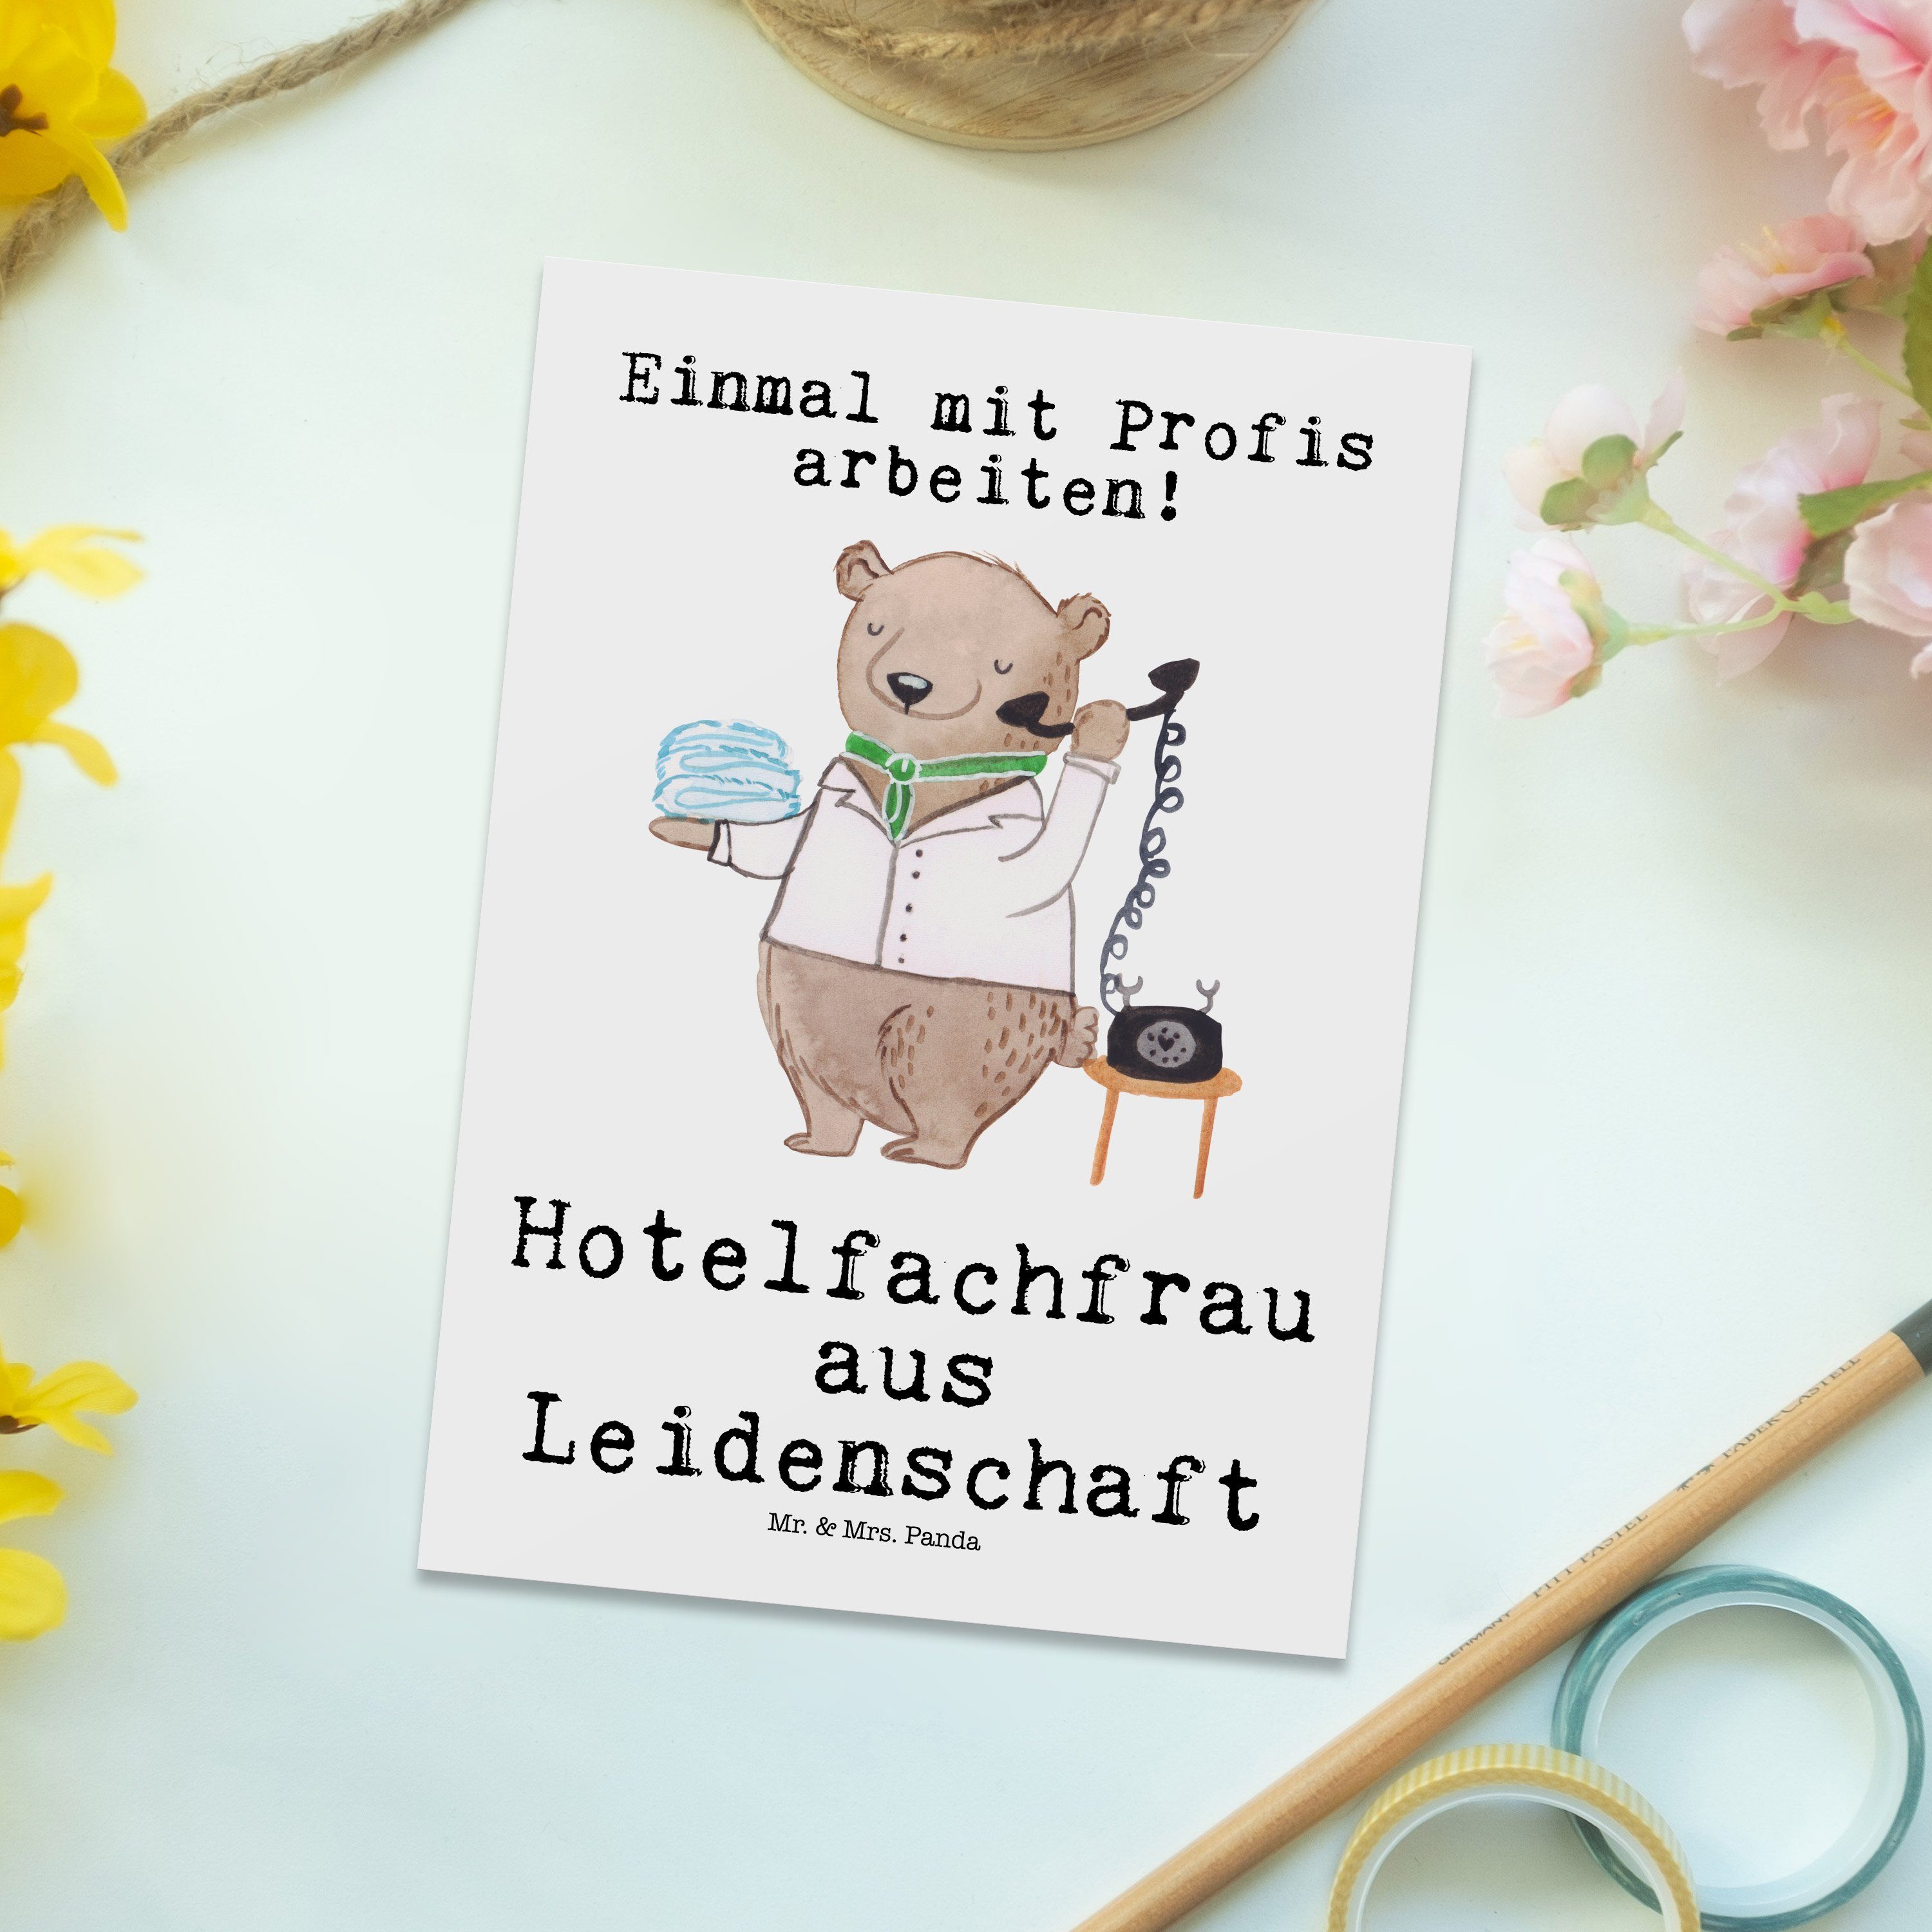 & Geschenk, Mr. Hotelfa aus Dankeschön, Leidenschaft Weiß Mrs. Panda Hotelfachfrau Postkarte - -